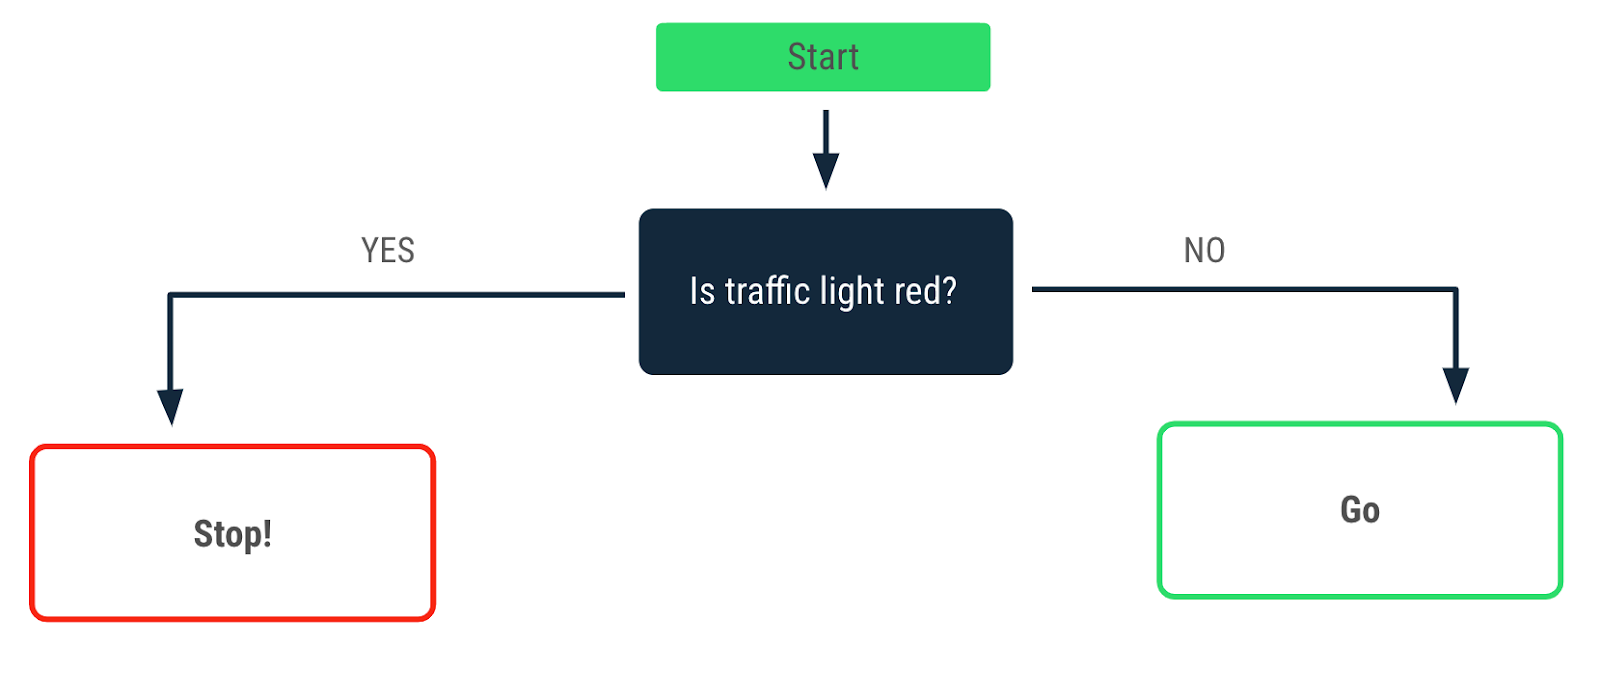 Organigramme décrivant la décision prise lorsque le feu est rouge. Une flèche "Oui" pointe vers le message "Stop!". Une flèche "Non" pointe vers le message "Go".